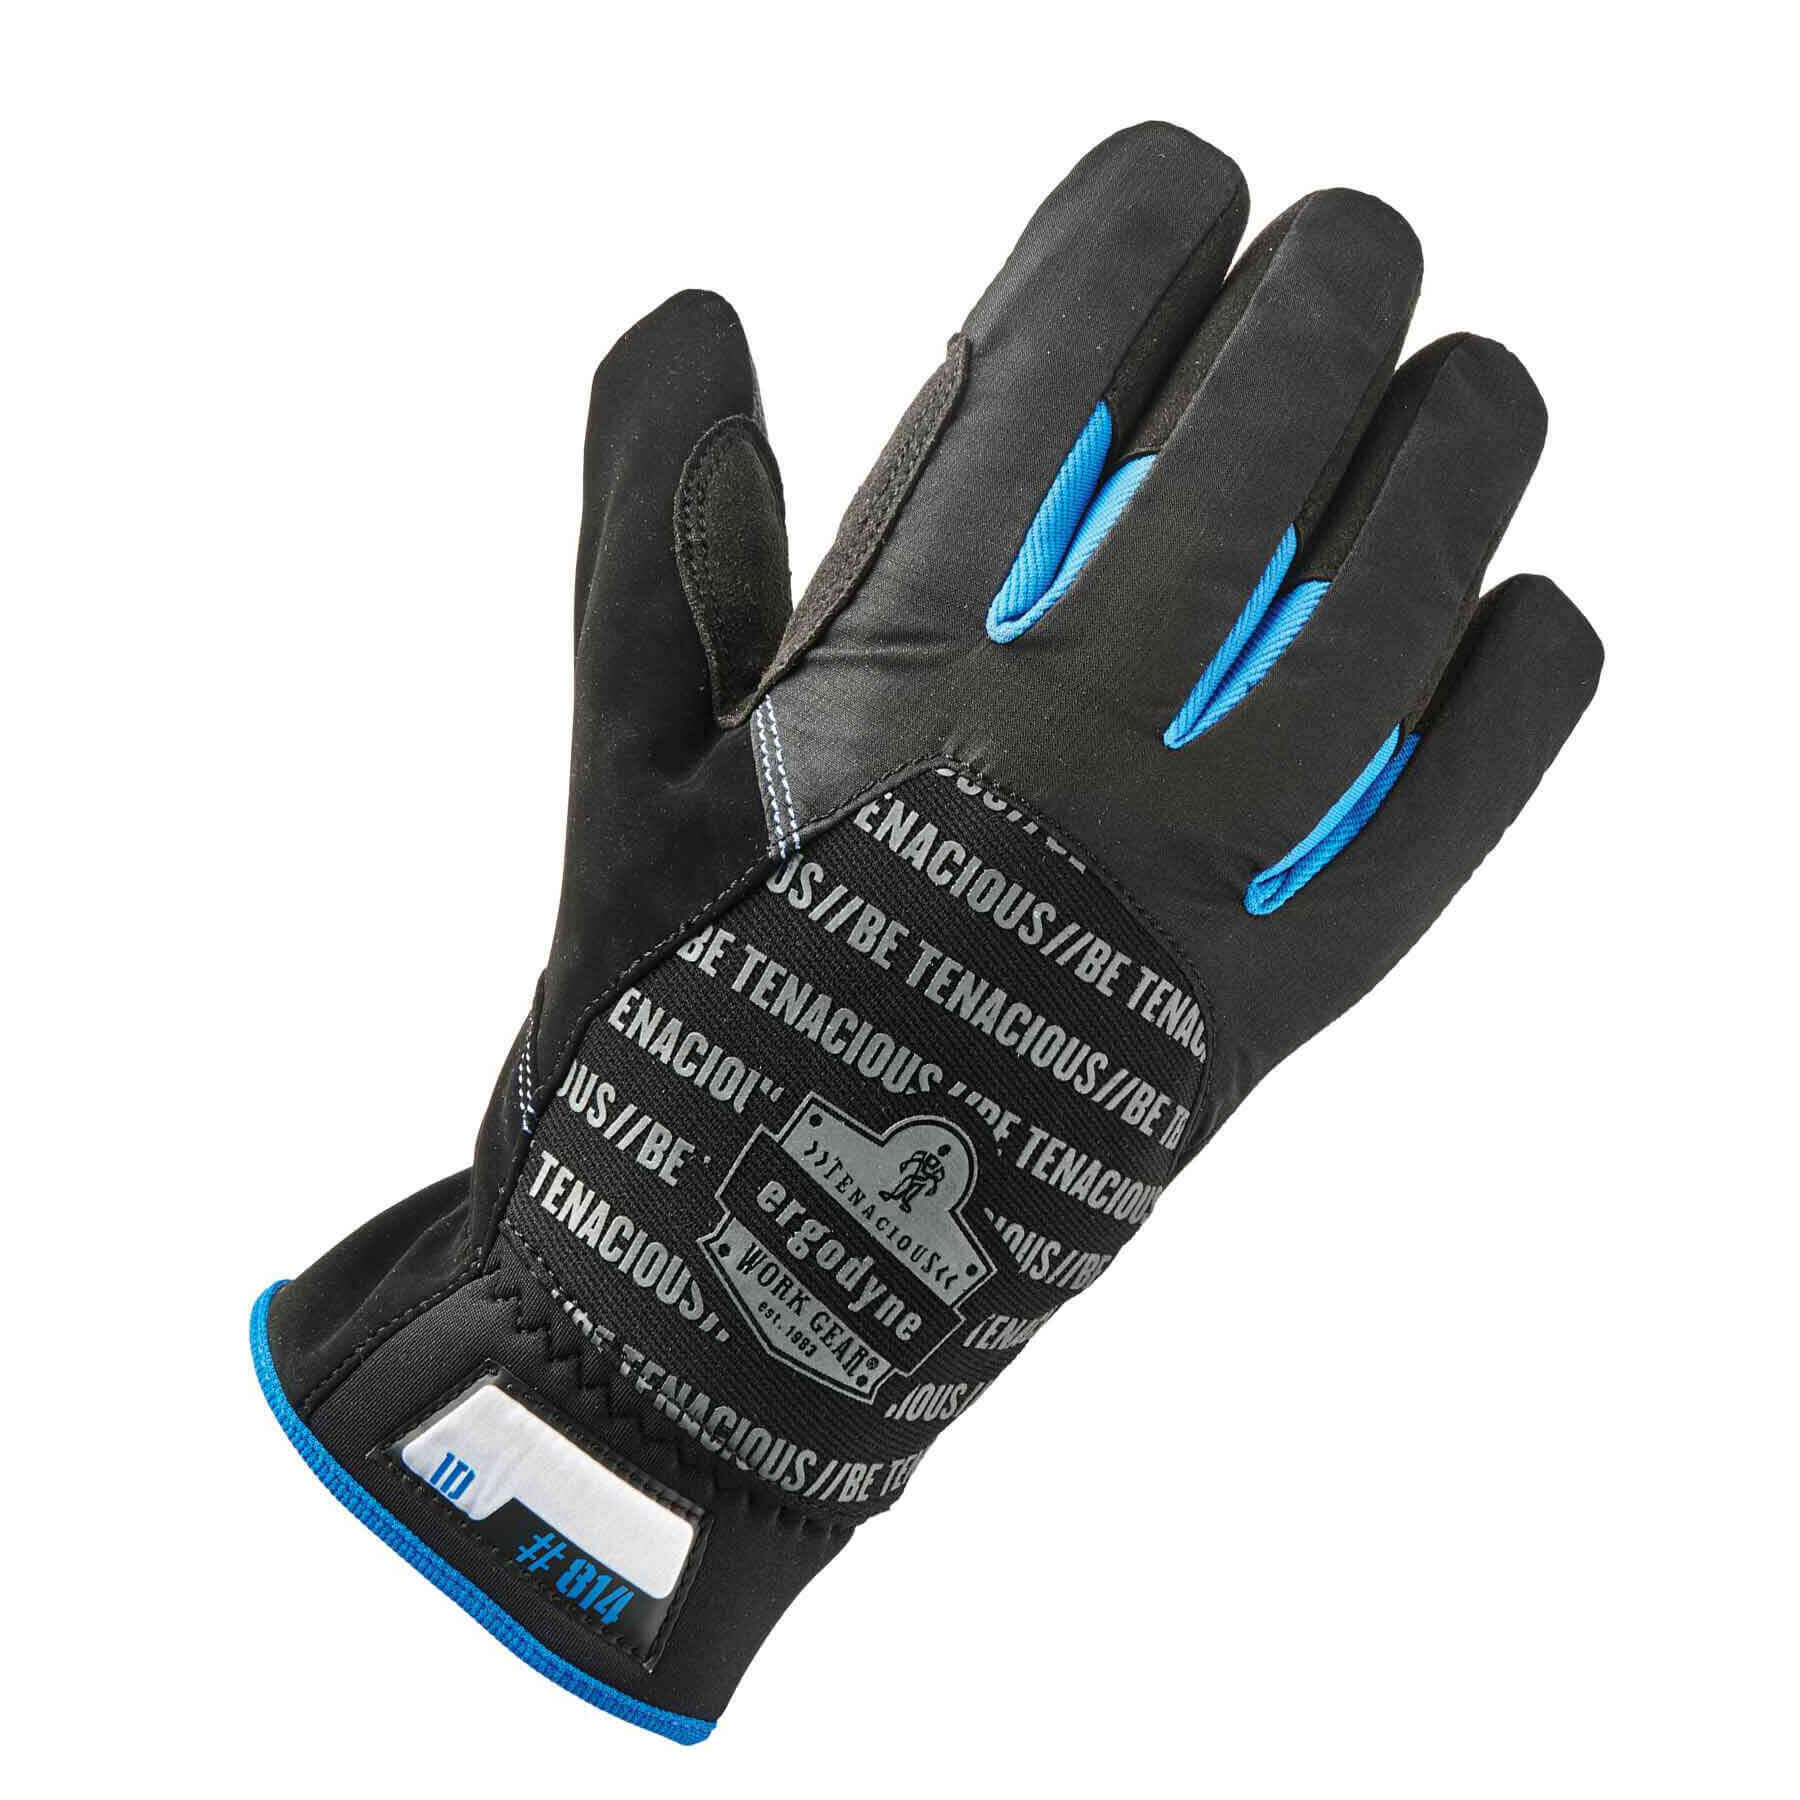 https://www.ergodyne.com/sites/default/files/product-images/17332-814-thermal-utility-gloves-black-dorsal.jpg